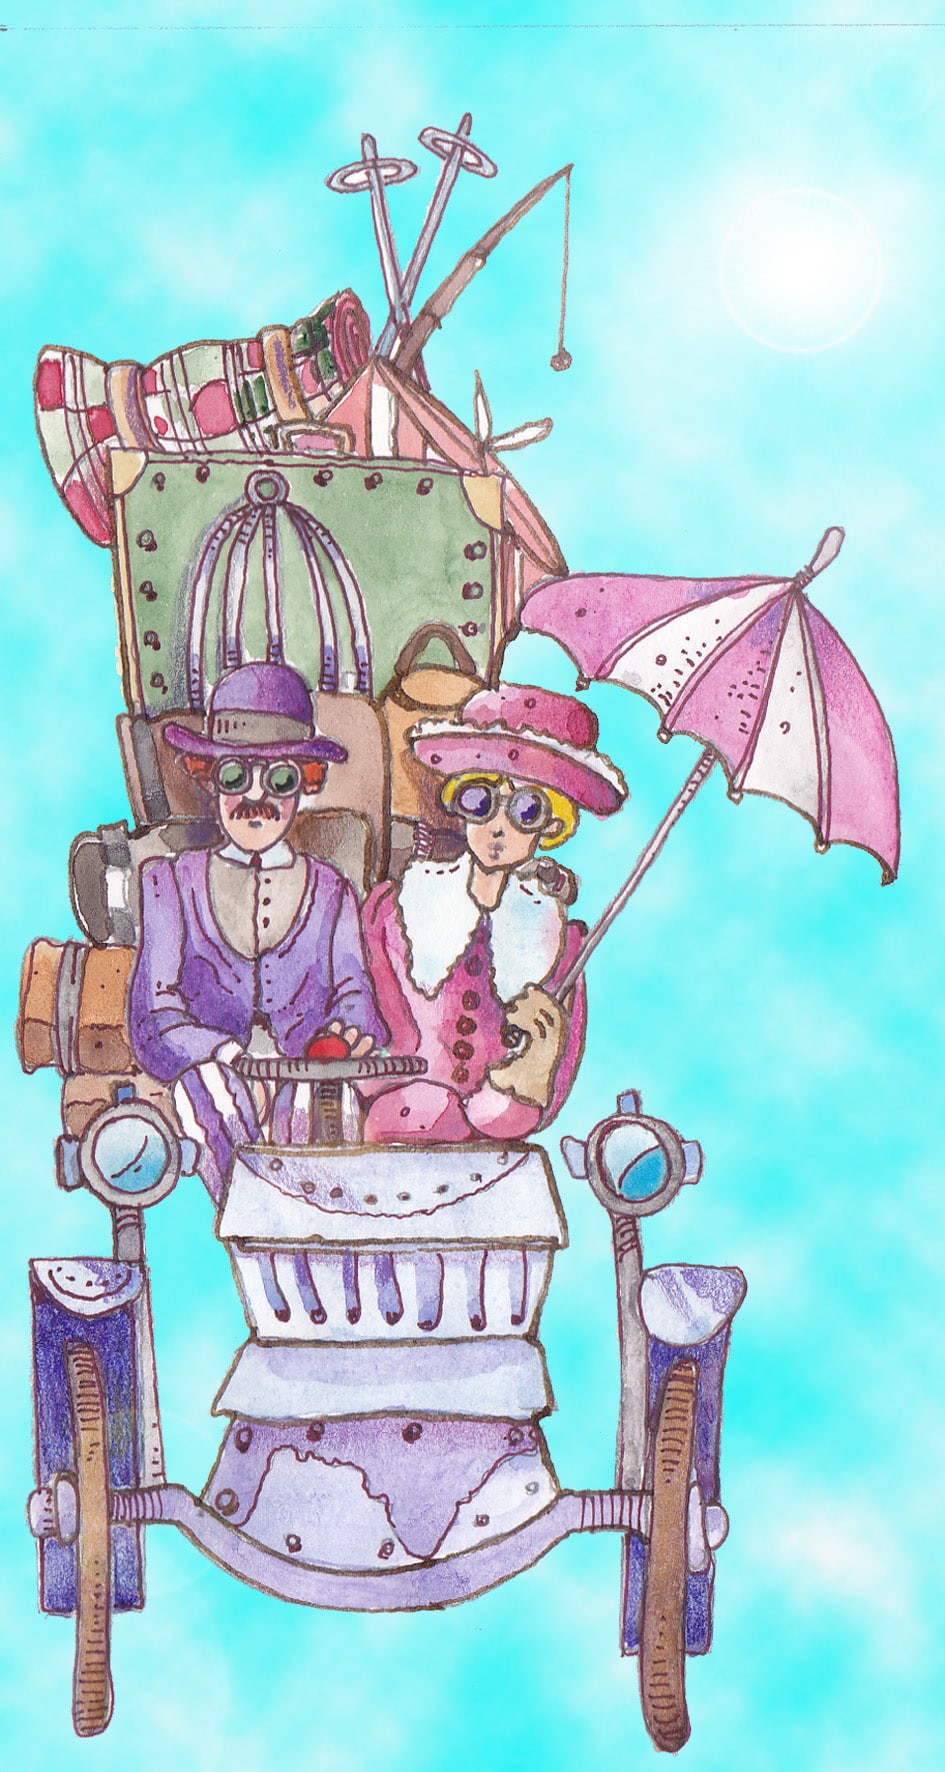 Due viaggiatori in auto d'epoca con molti bagagli (Per leggerne la descrizione proseguire nel link). Si vede forntalmente un'auto d'epoca. Il conducente signorilmente vestito con bombetta e completo, il passeggero - una signora - abbigliata con una giacca rosa e doppio petto di pelliccia bianca. Tiene nella mano sinistra un ombrellino rosa parasole, aperto. Dietro di loro si vede una catasta di valigie legate nel portabagagli.